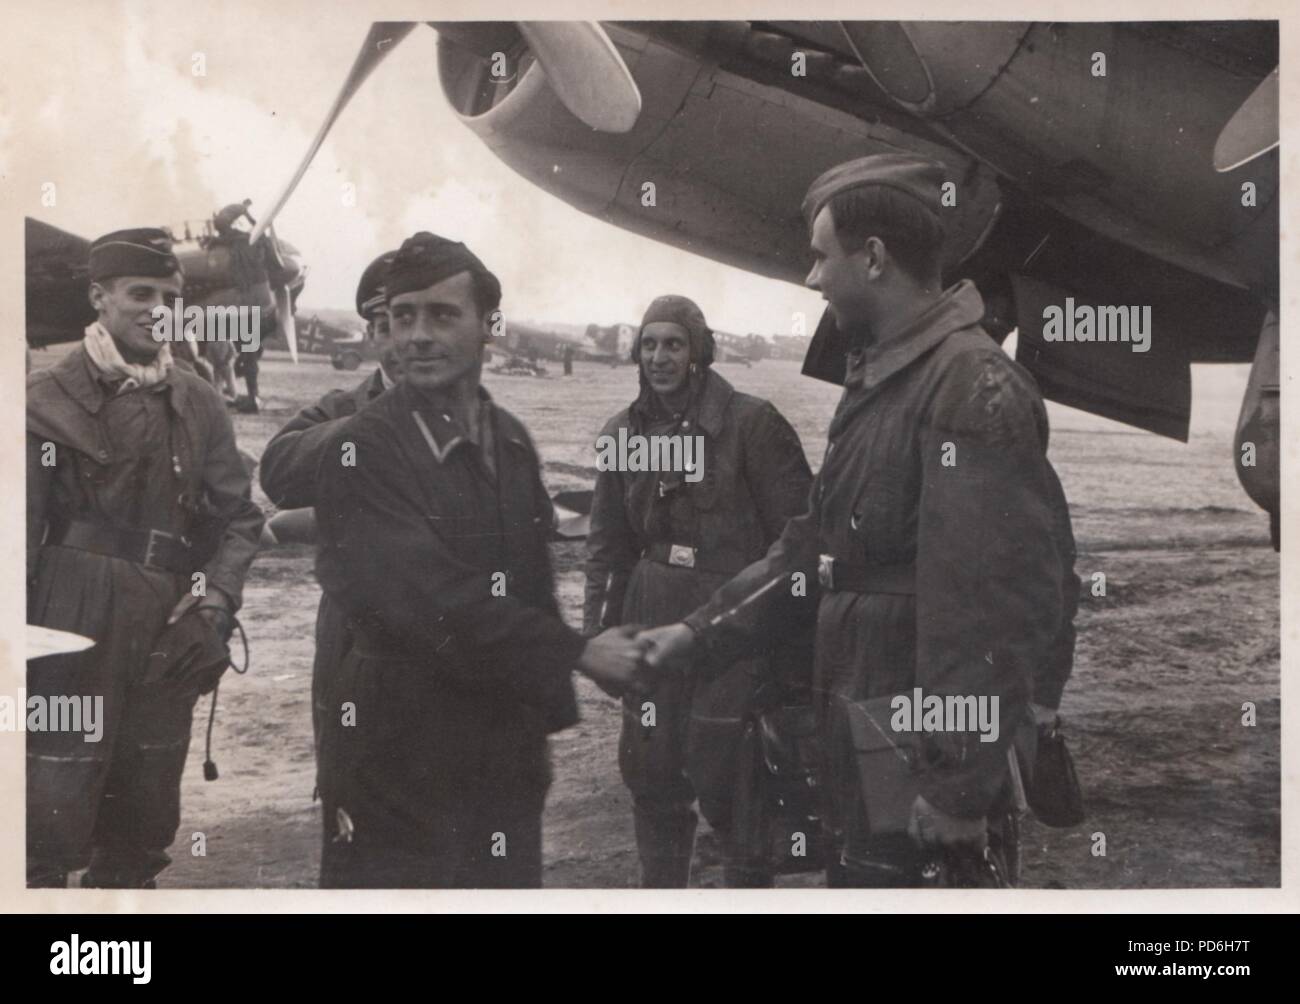 Droit de l'album photo de l'Oberleutnant Oscar Müller de la Kampfgeschwader 1 : Oscar Müller et son équipage de 5./KG 1 féliciter un membre de leur équipe au sol pour un travail bien fait, après une mission de l'Aérodrome de Dno en Russie, 1942. Banque D'Images